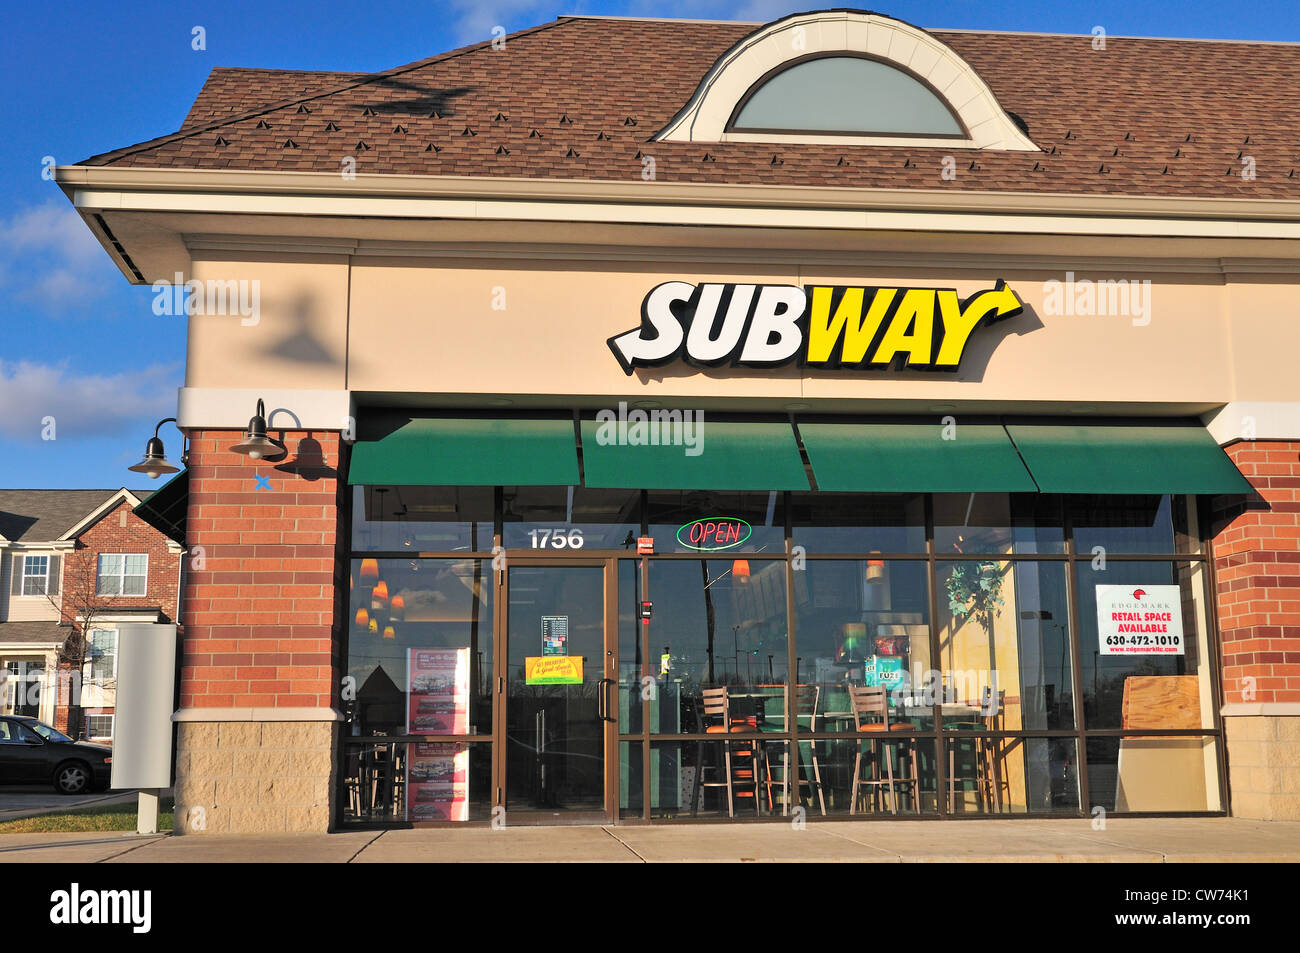 Une franchise Subway dans le nord de l'Illinois. Typique de la plupart des franchises, il est situé dans un centre commercial. Elgin, Illinois, USA. Banque D'Images